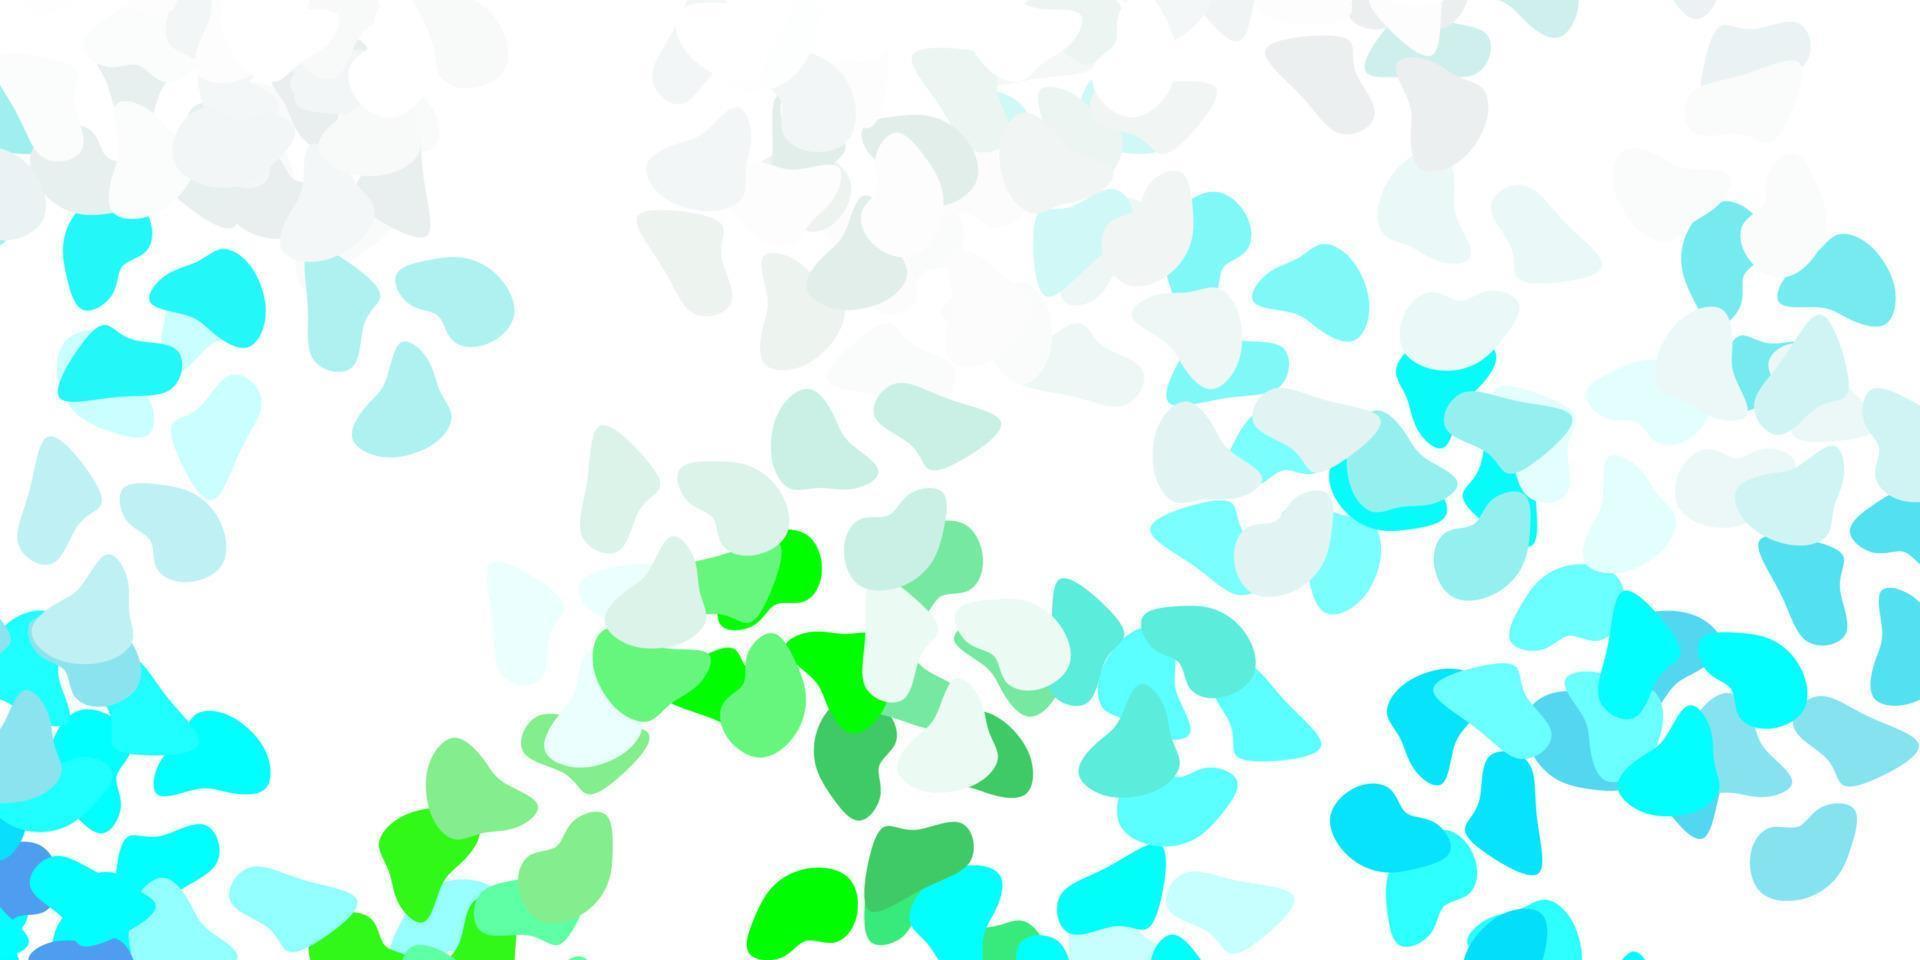 texture de vecteur bleu clair, vert avec des formes de memphis.